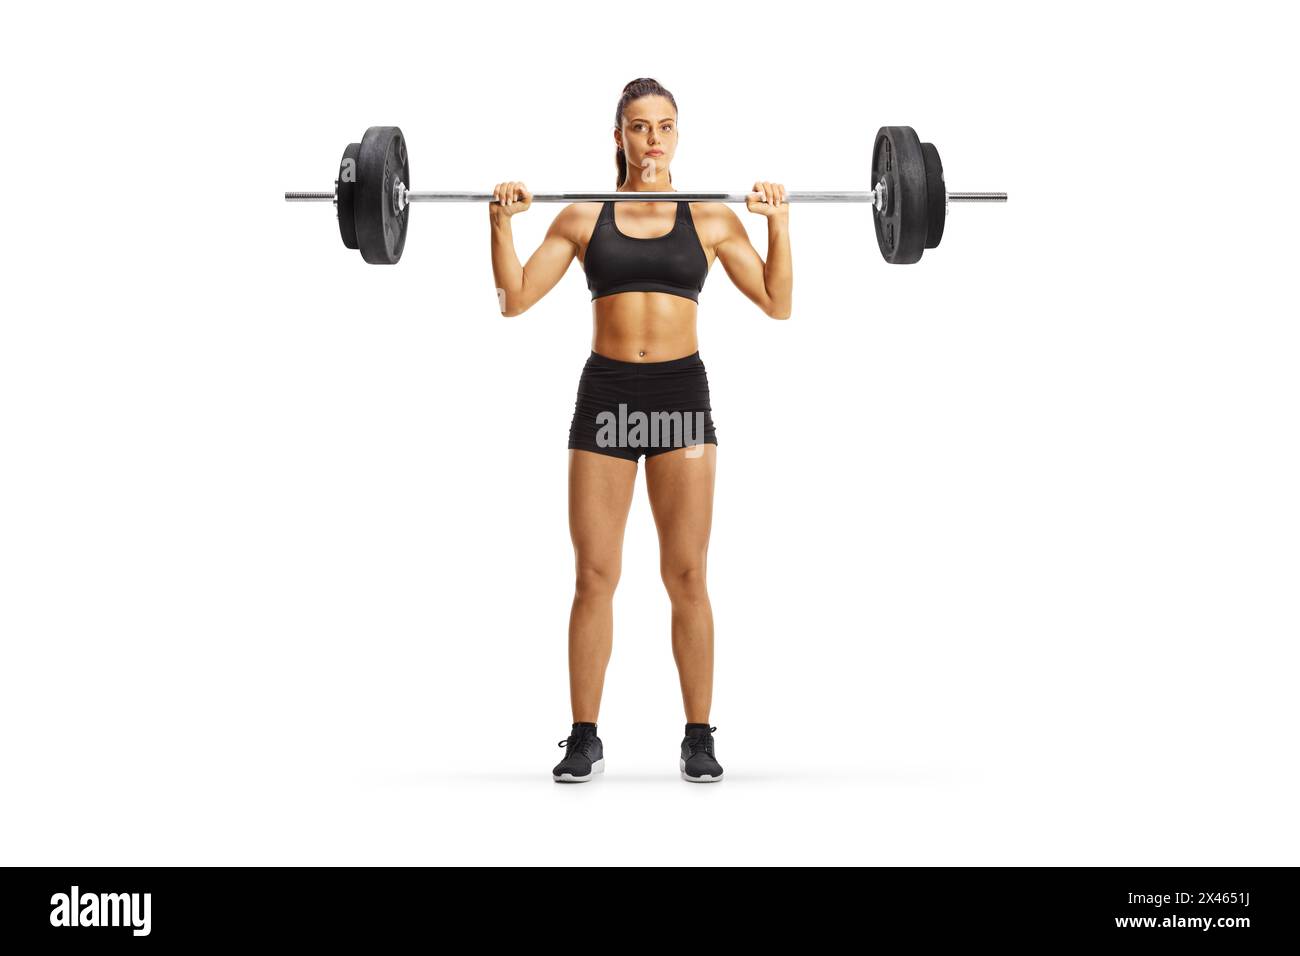 Giovane donna che pratica allenamento con i pesi isolata su sfondo bianco, concetto di bodybuilding Foto Stock